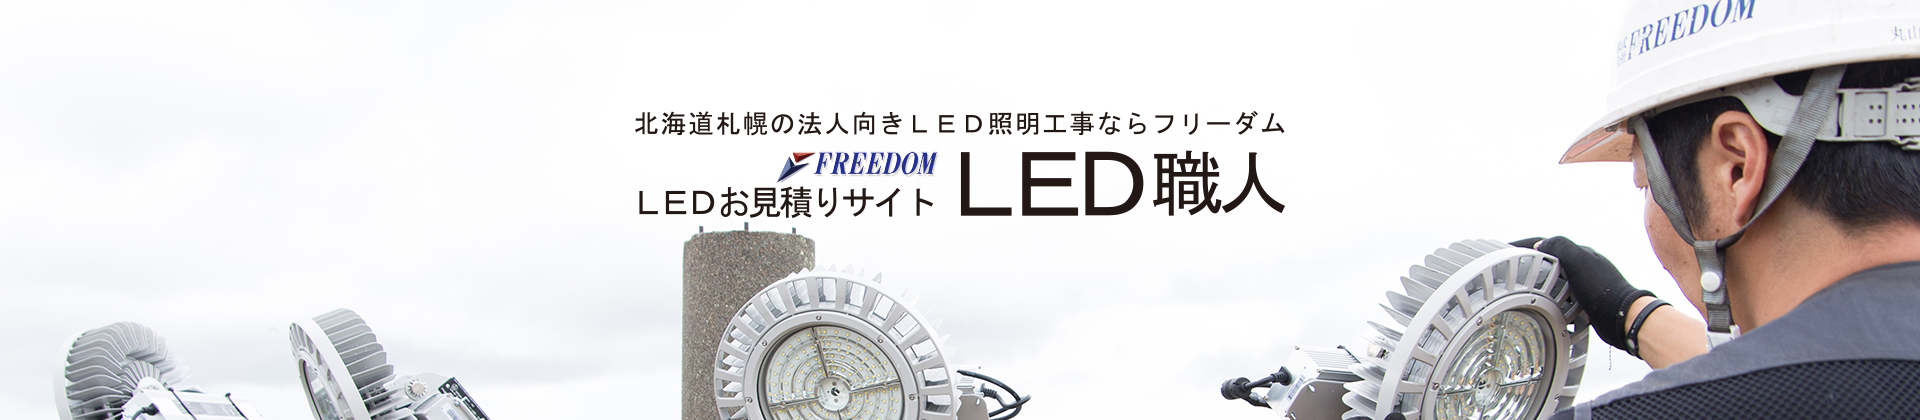 札幌LED驚きの年間施工実績